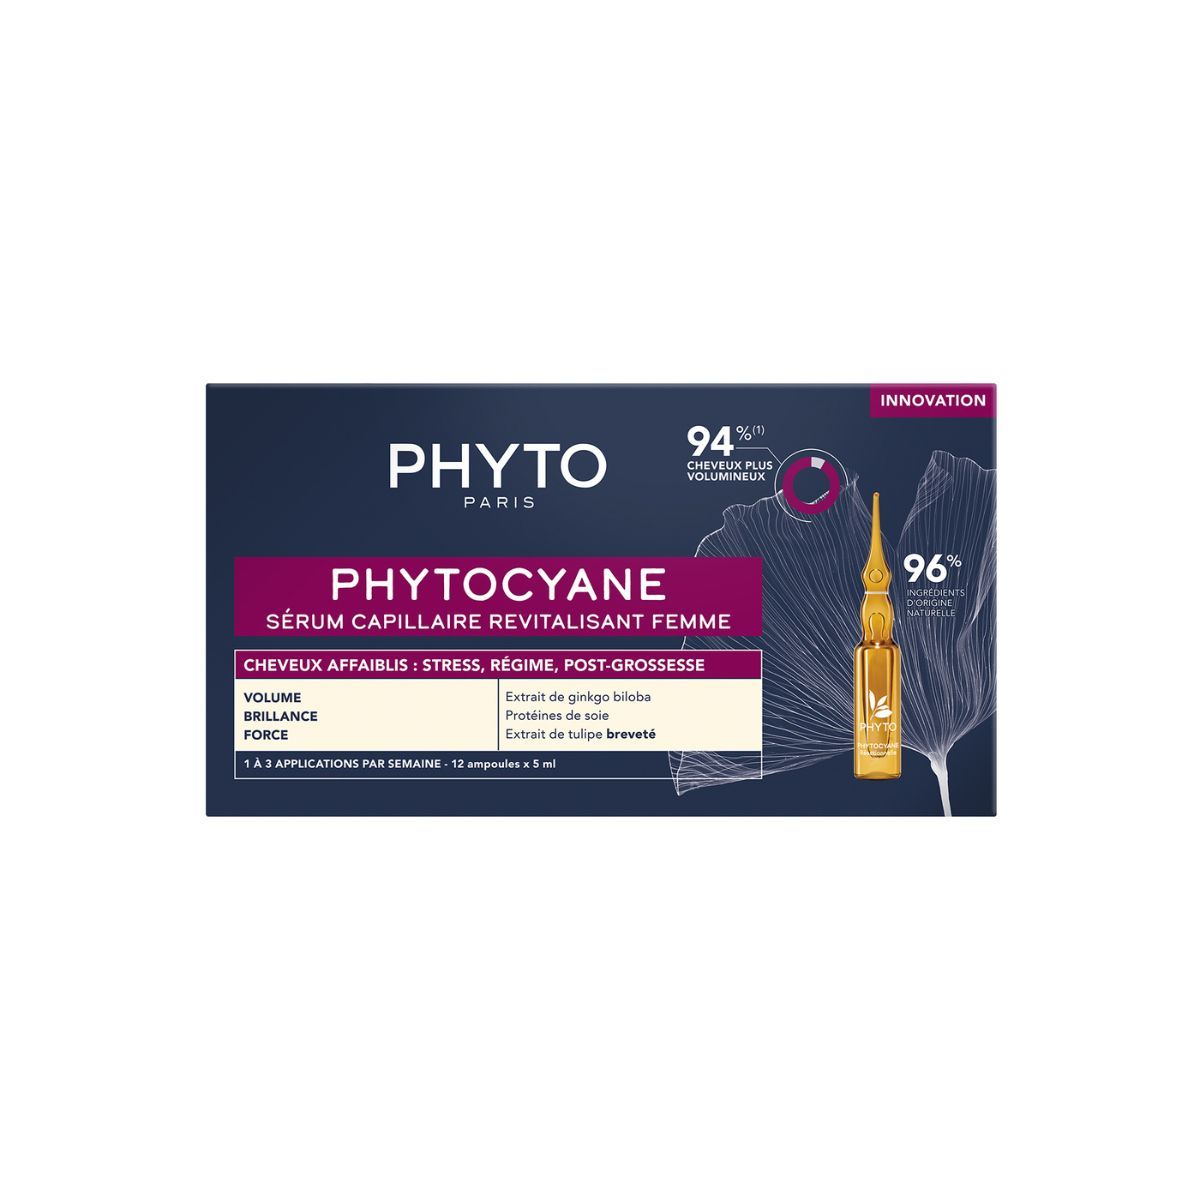 PHYTOCYANE - Revitalizing Hair Serum For Women 